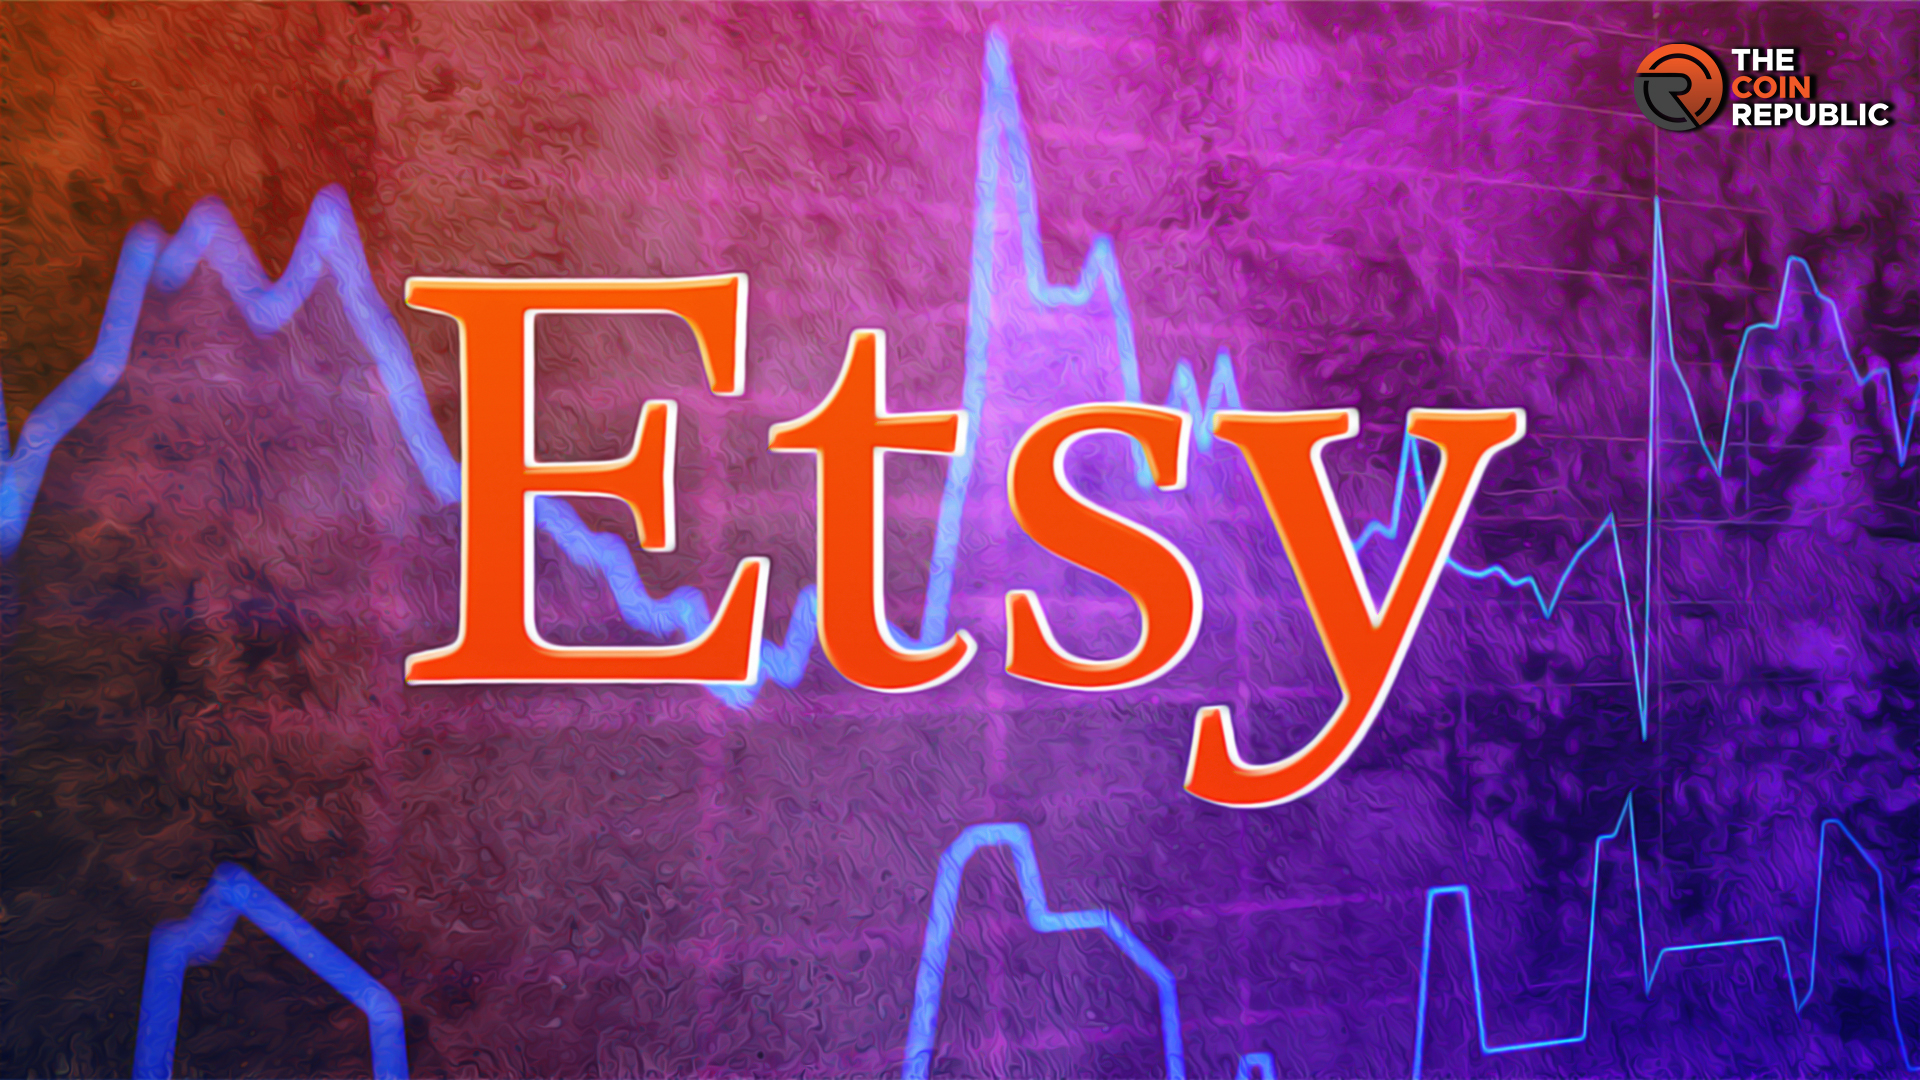 etsy logo vector